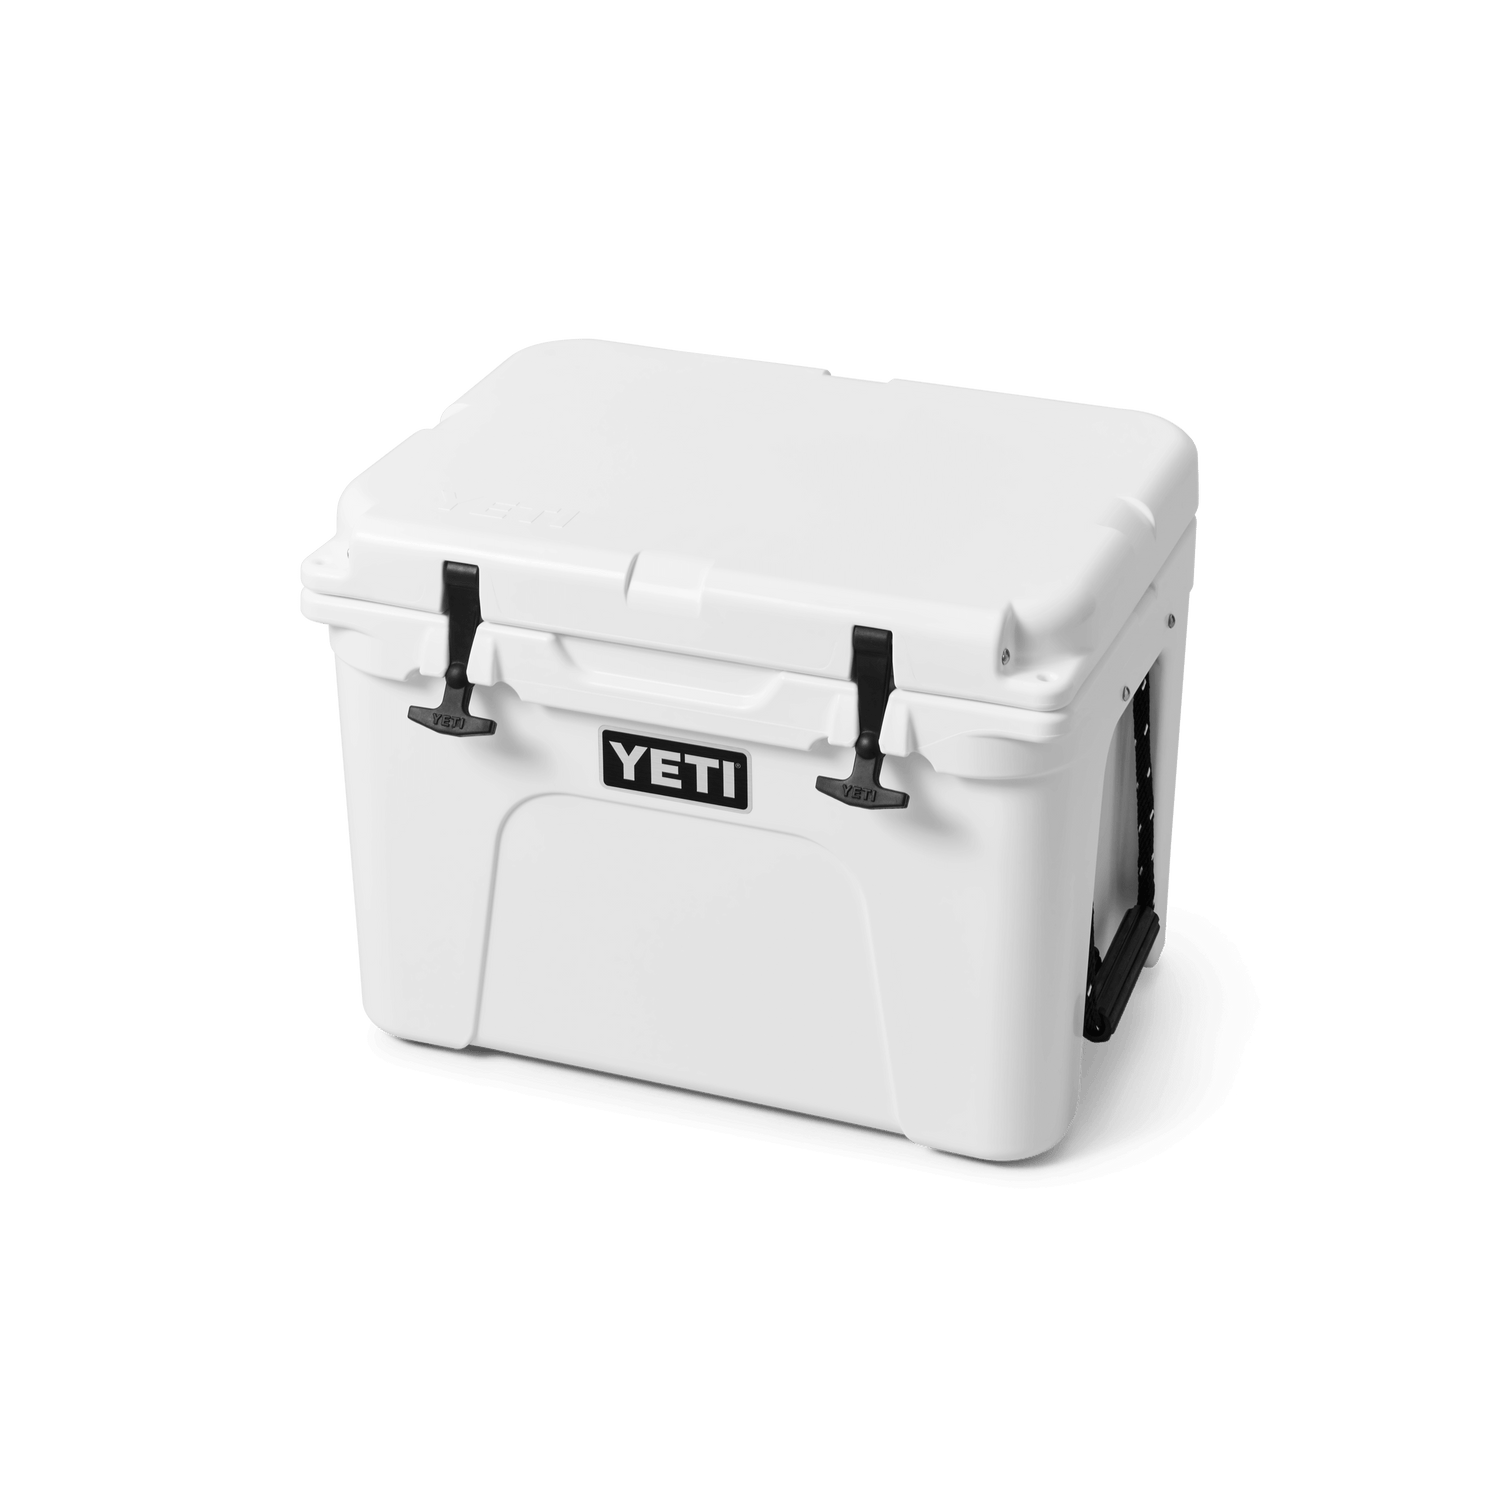 YETI Kühlbox Tundra 35 (Beige) - Thermoskannen & Isoliergefäße - Ausrüstung  - Outdoor Online Shop